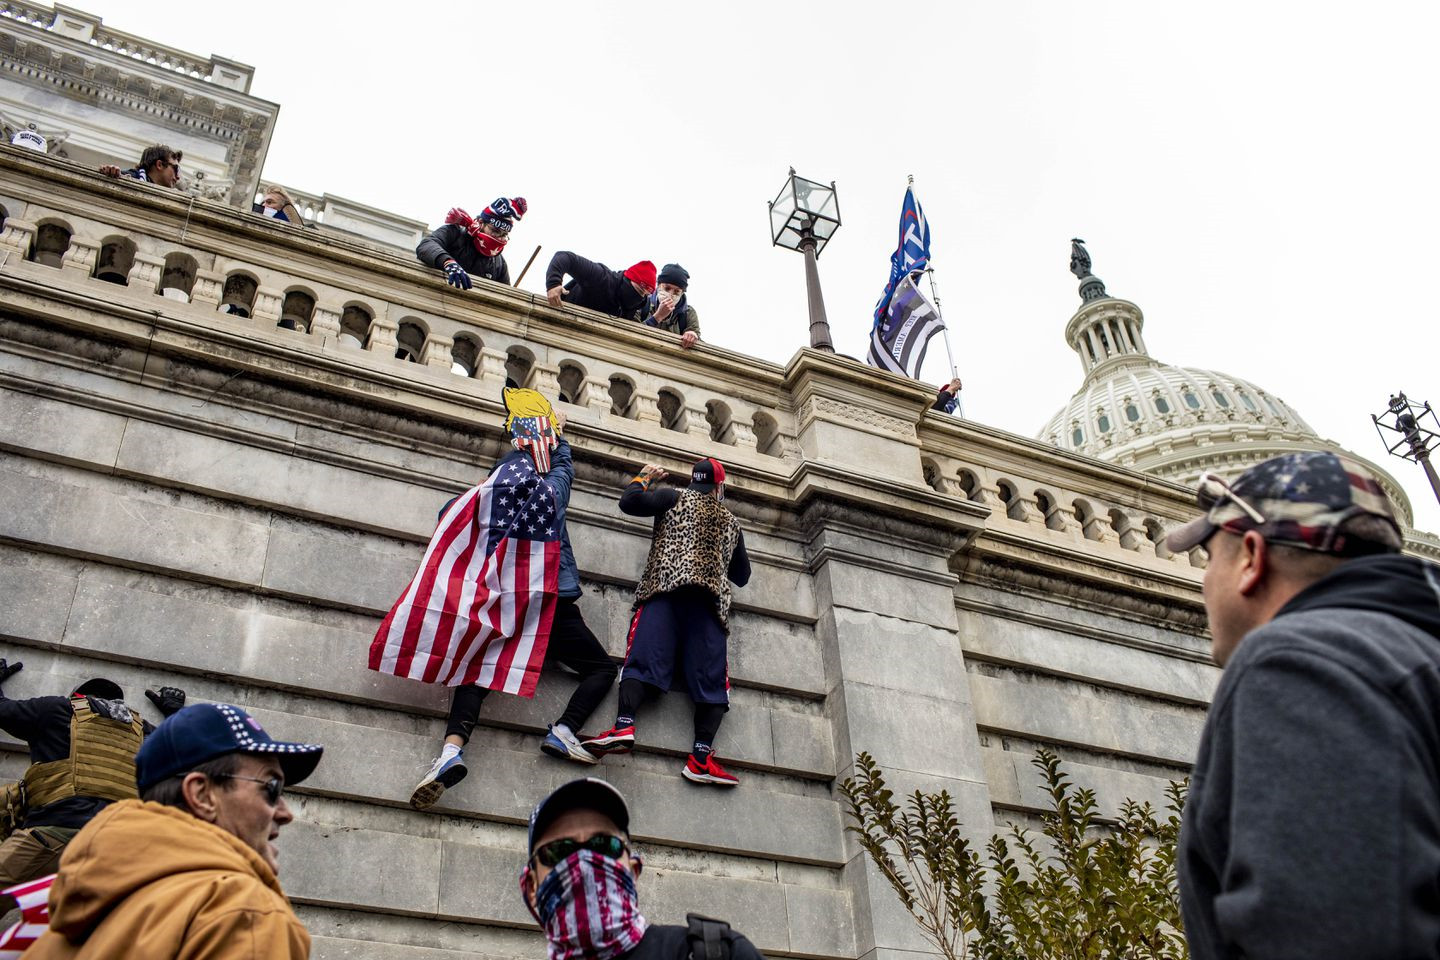 Trực tiếp: Người ủng hộ Trump xông vào toà nhà Quốc hội, Điện Capitol tê liệt - 6